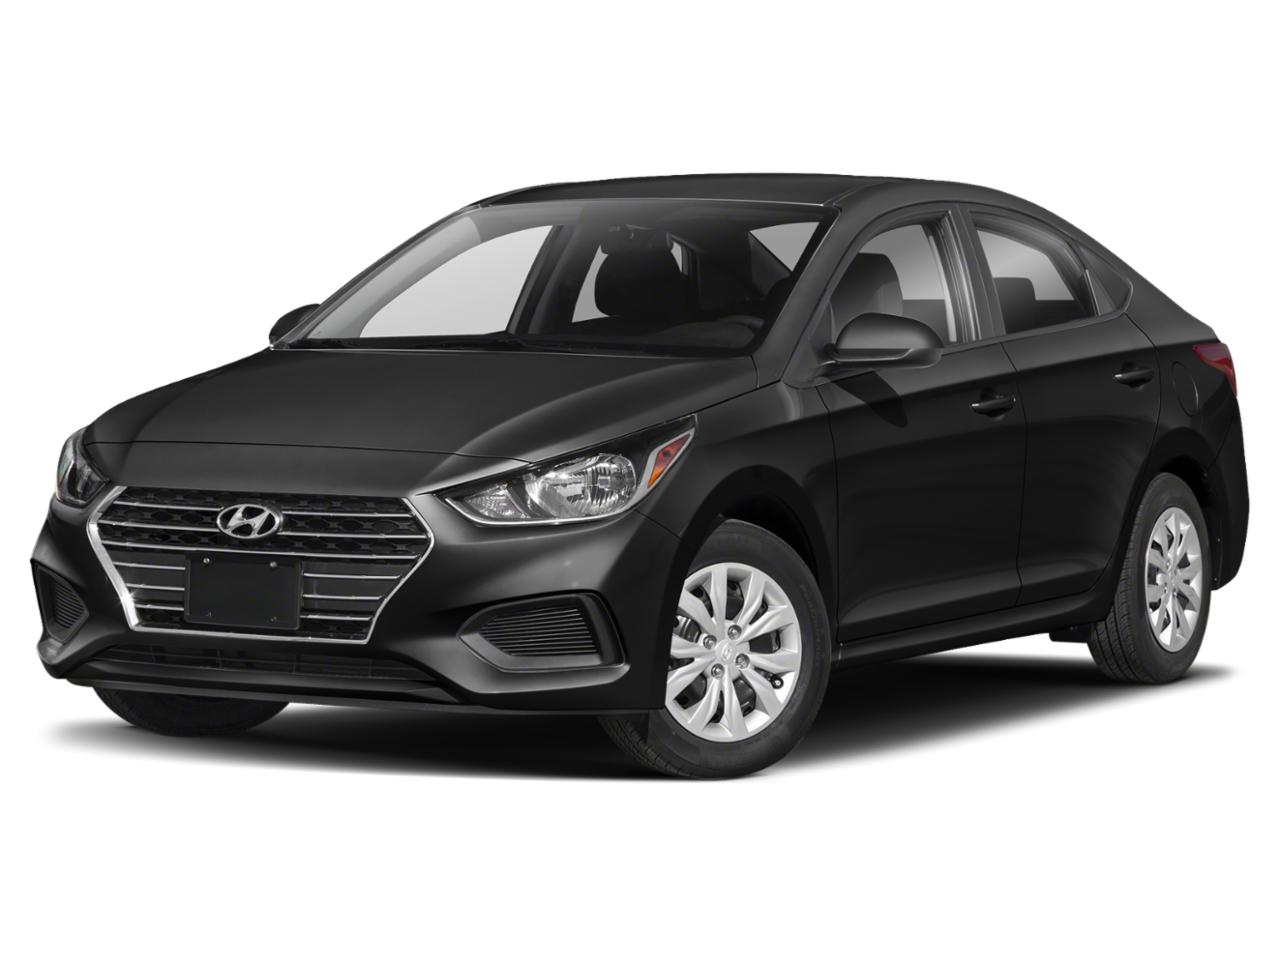 New 2021 Hyundai Accent SE Sedan IVT for Sale in Merrillville ...